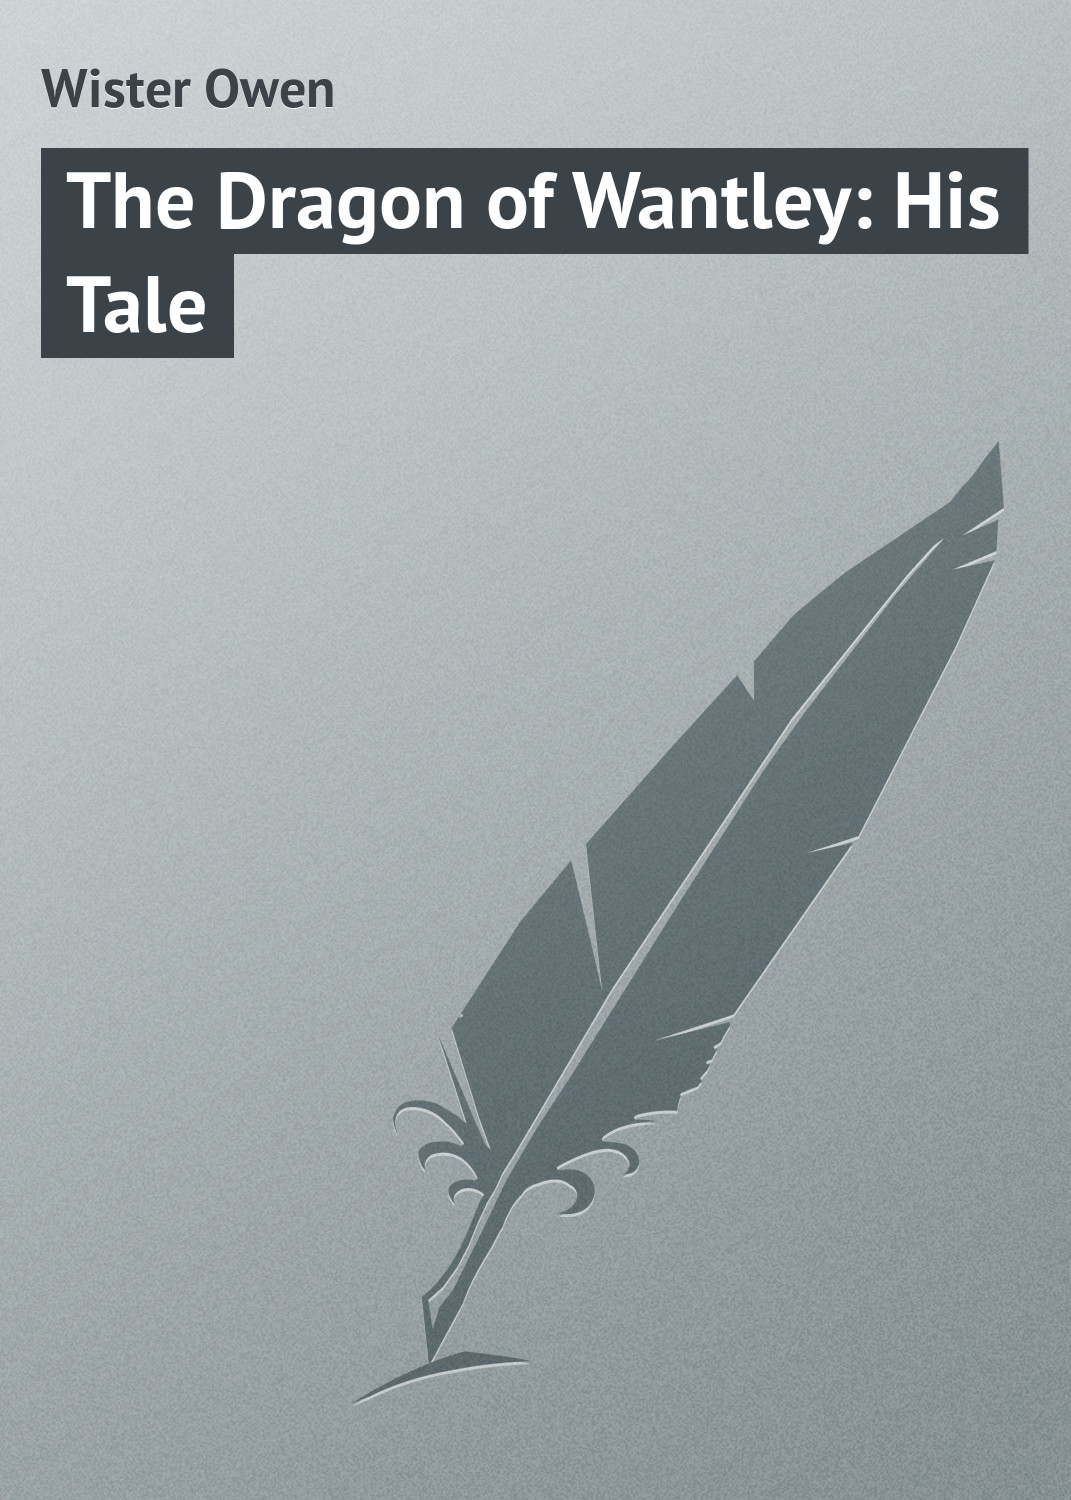 Книга The Dragon of Wantley: His Tale из серии , созданная Owen Wister, может относится к жанру Зарубежная классика, Иностранные языки. Стоимость электронной книги The Dragon of Wantley: His Tale с идентификатором 23151035 составляет 5.99 руб.